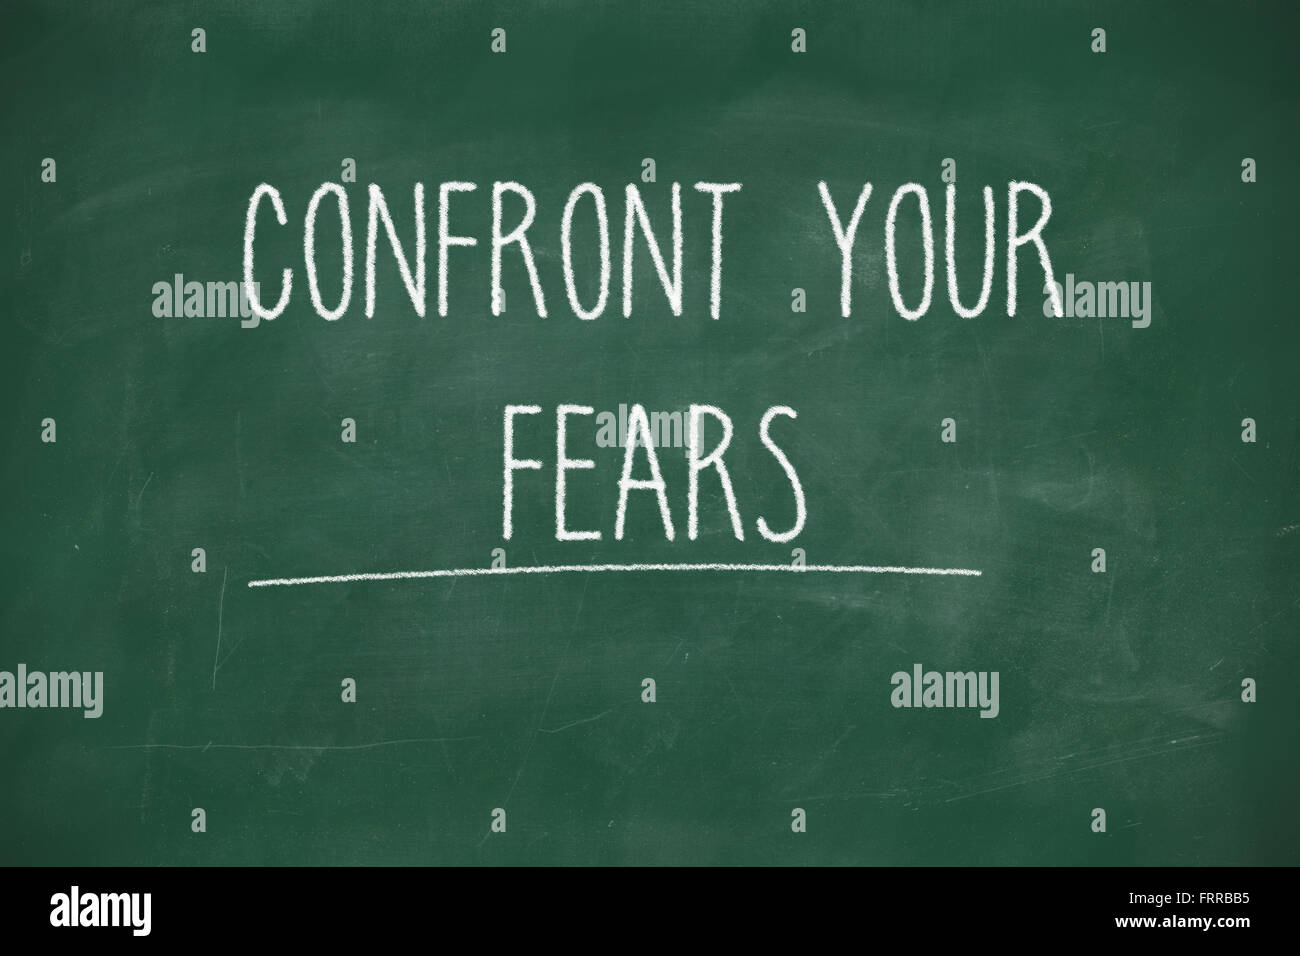 Confront your fears handwritten on school blackboard Stock Photo